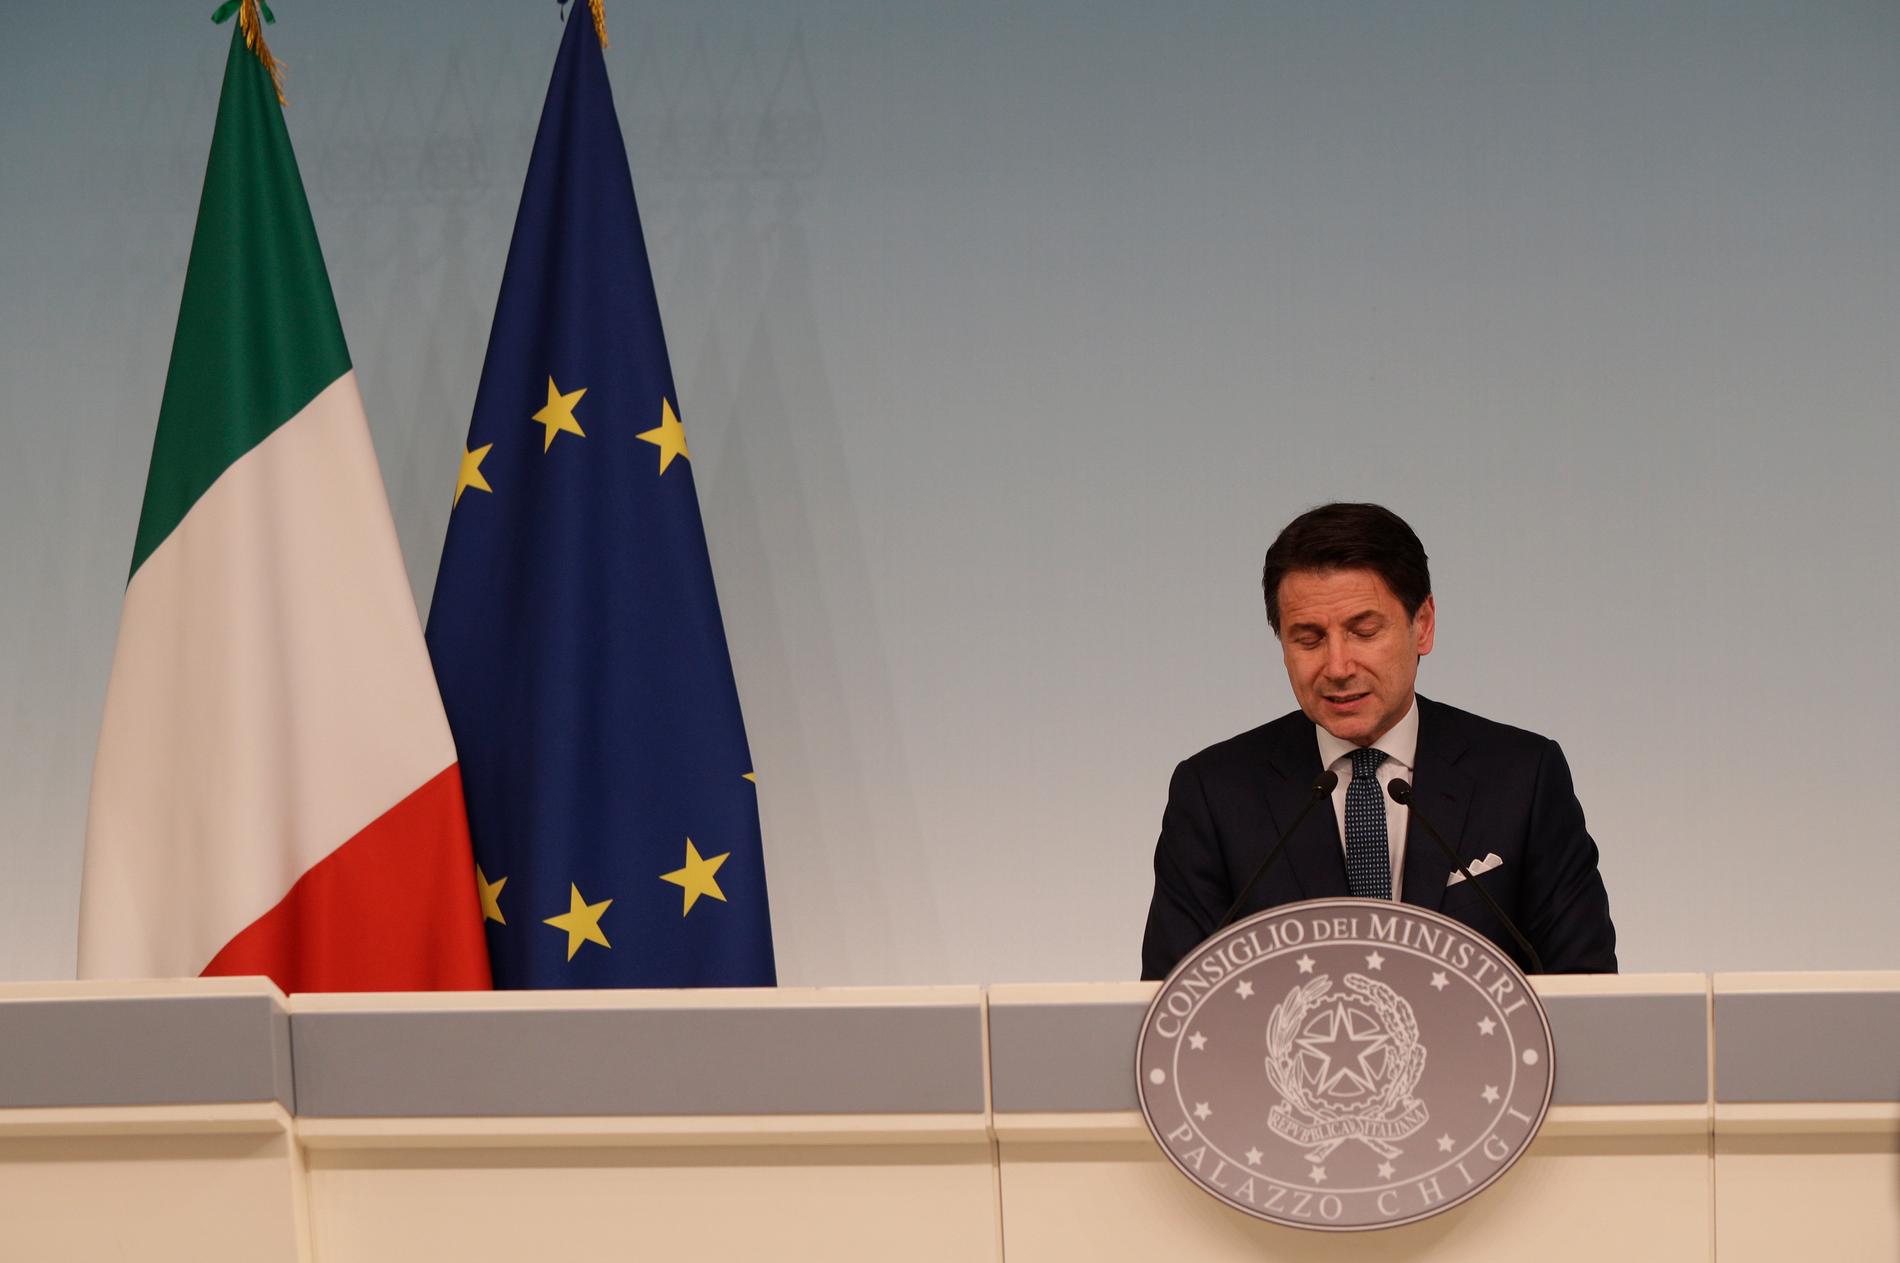 Italiens premiärminister Giuseppe Conte, en av spelarna när makten om Italien, Europas tredje största ekonomi, ska avgöras. Arkivbild